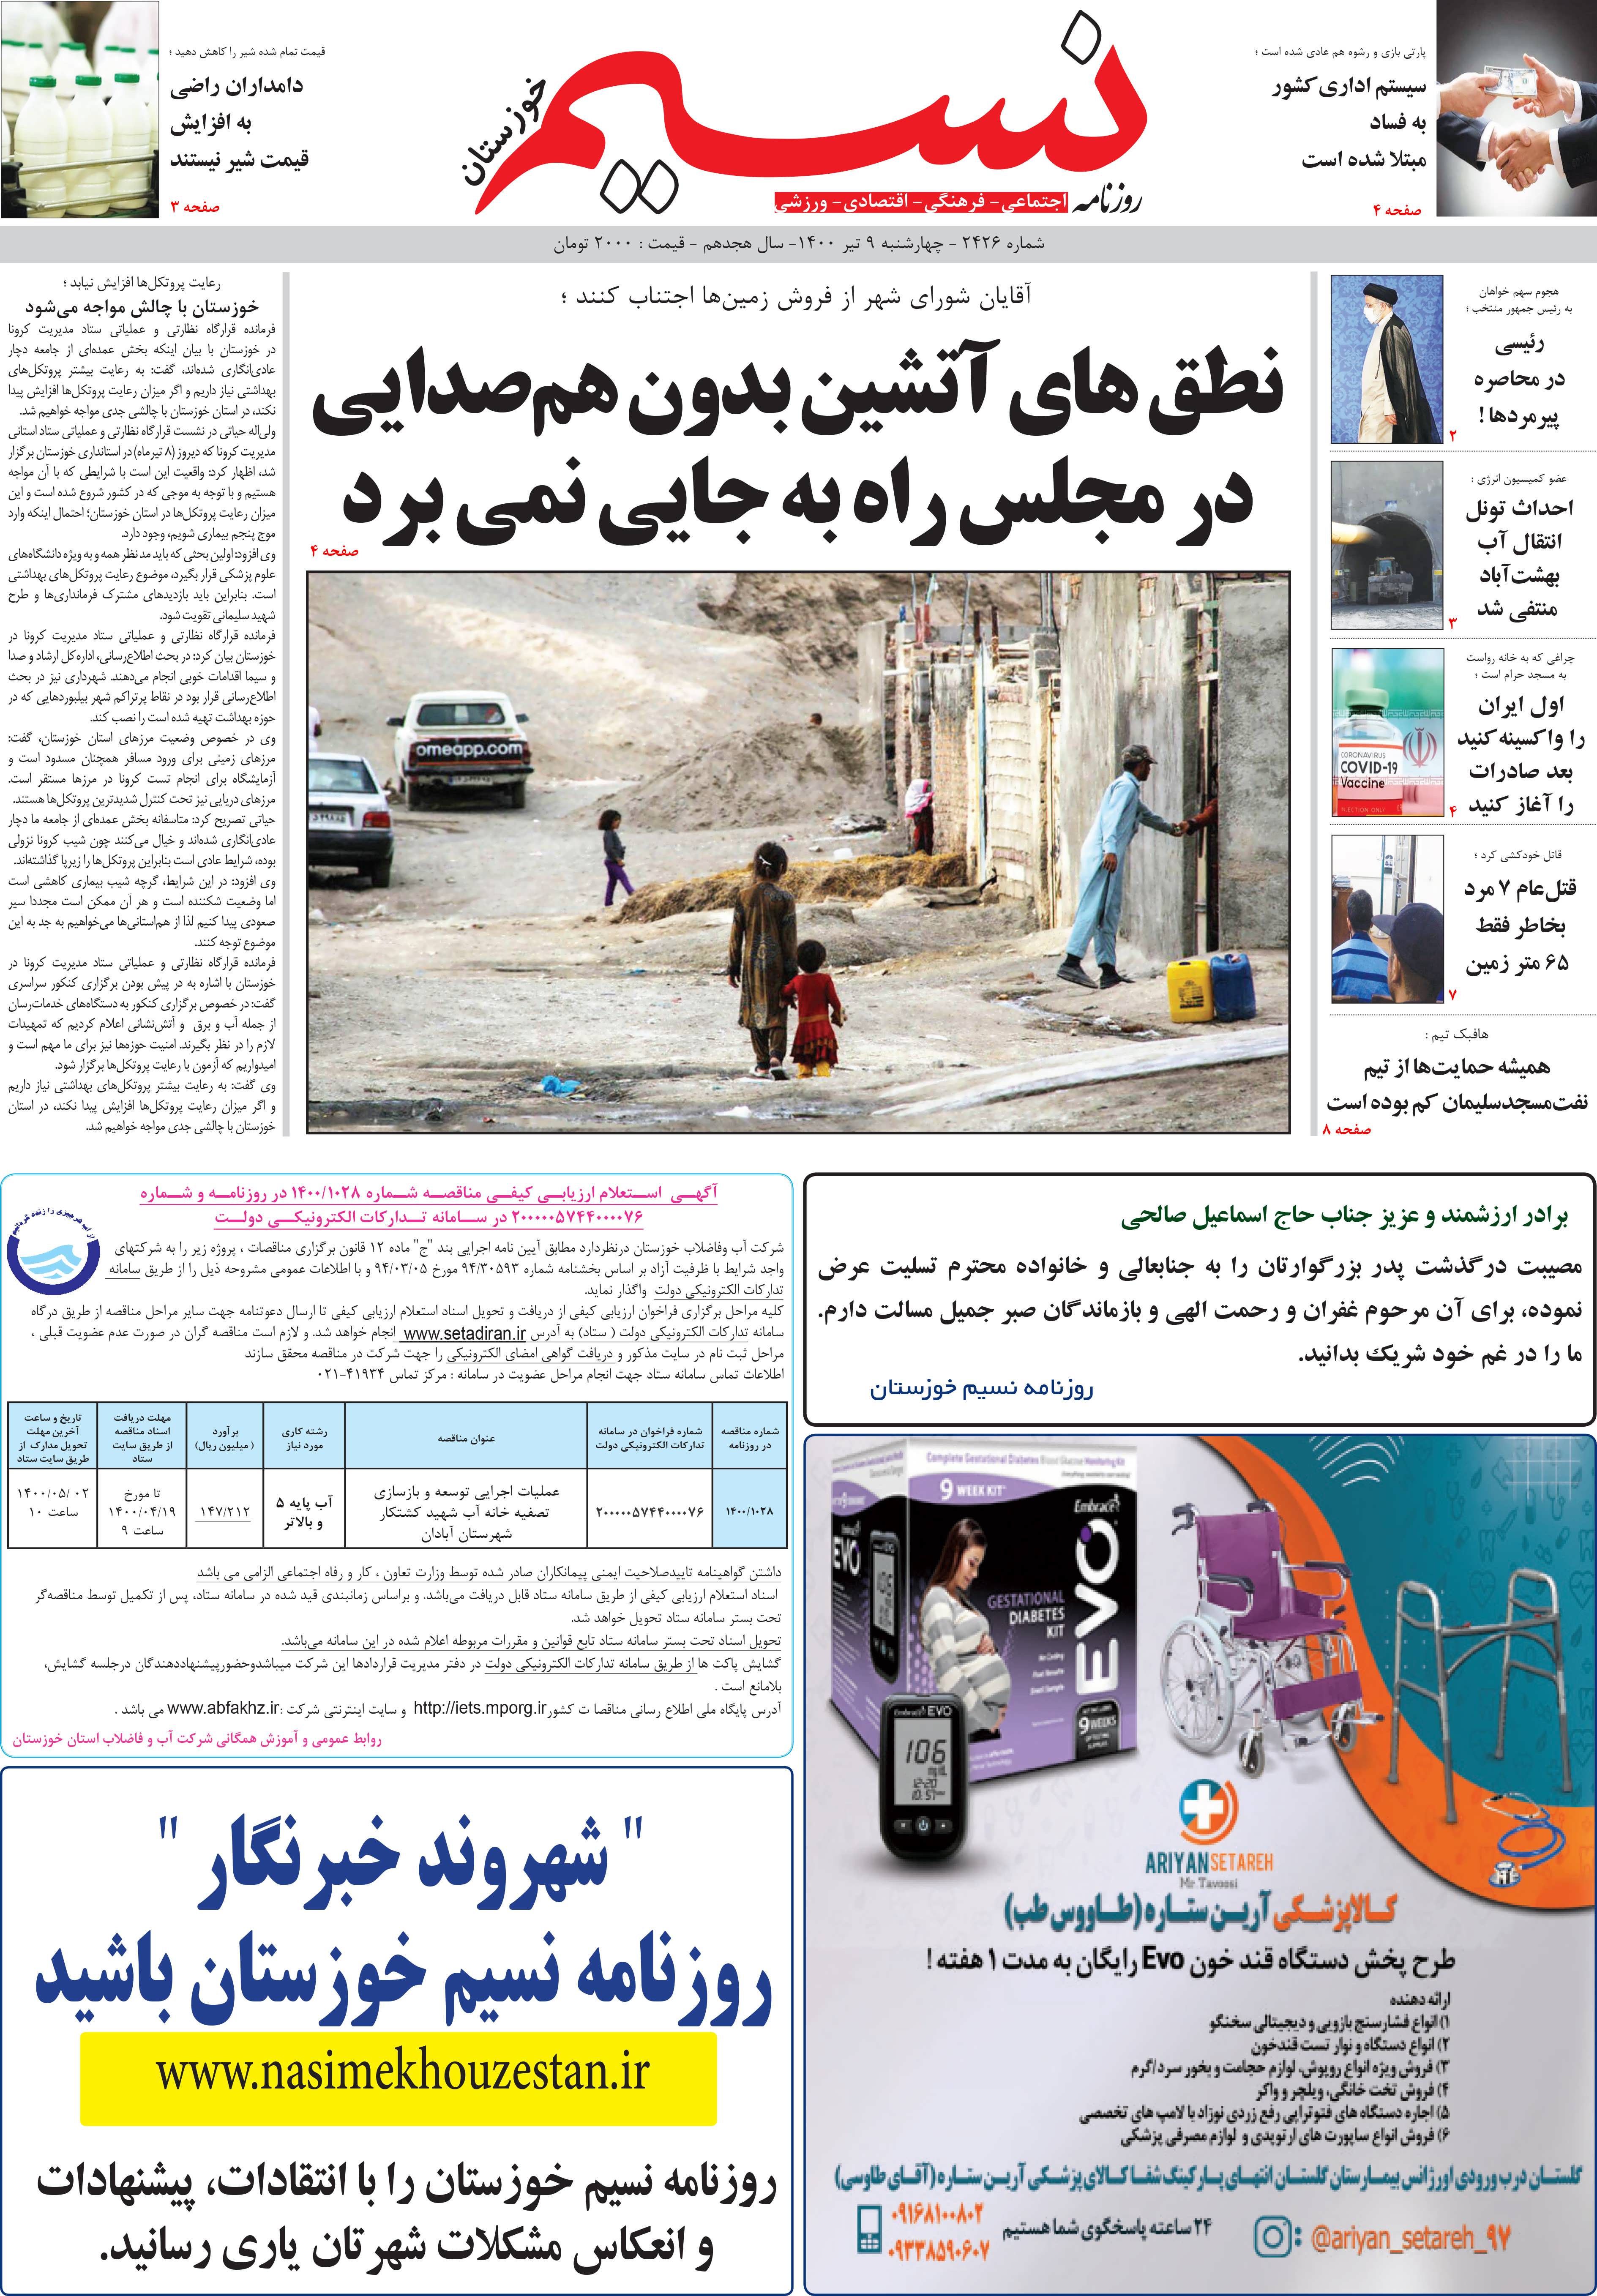 صفحه اصلی روزنامه نسیم شماره 2346 